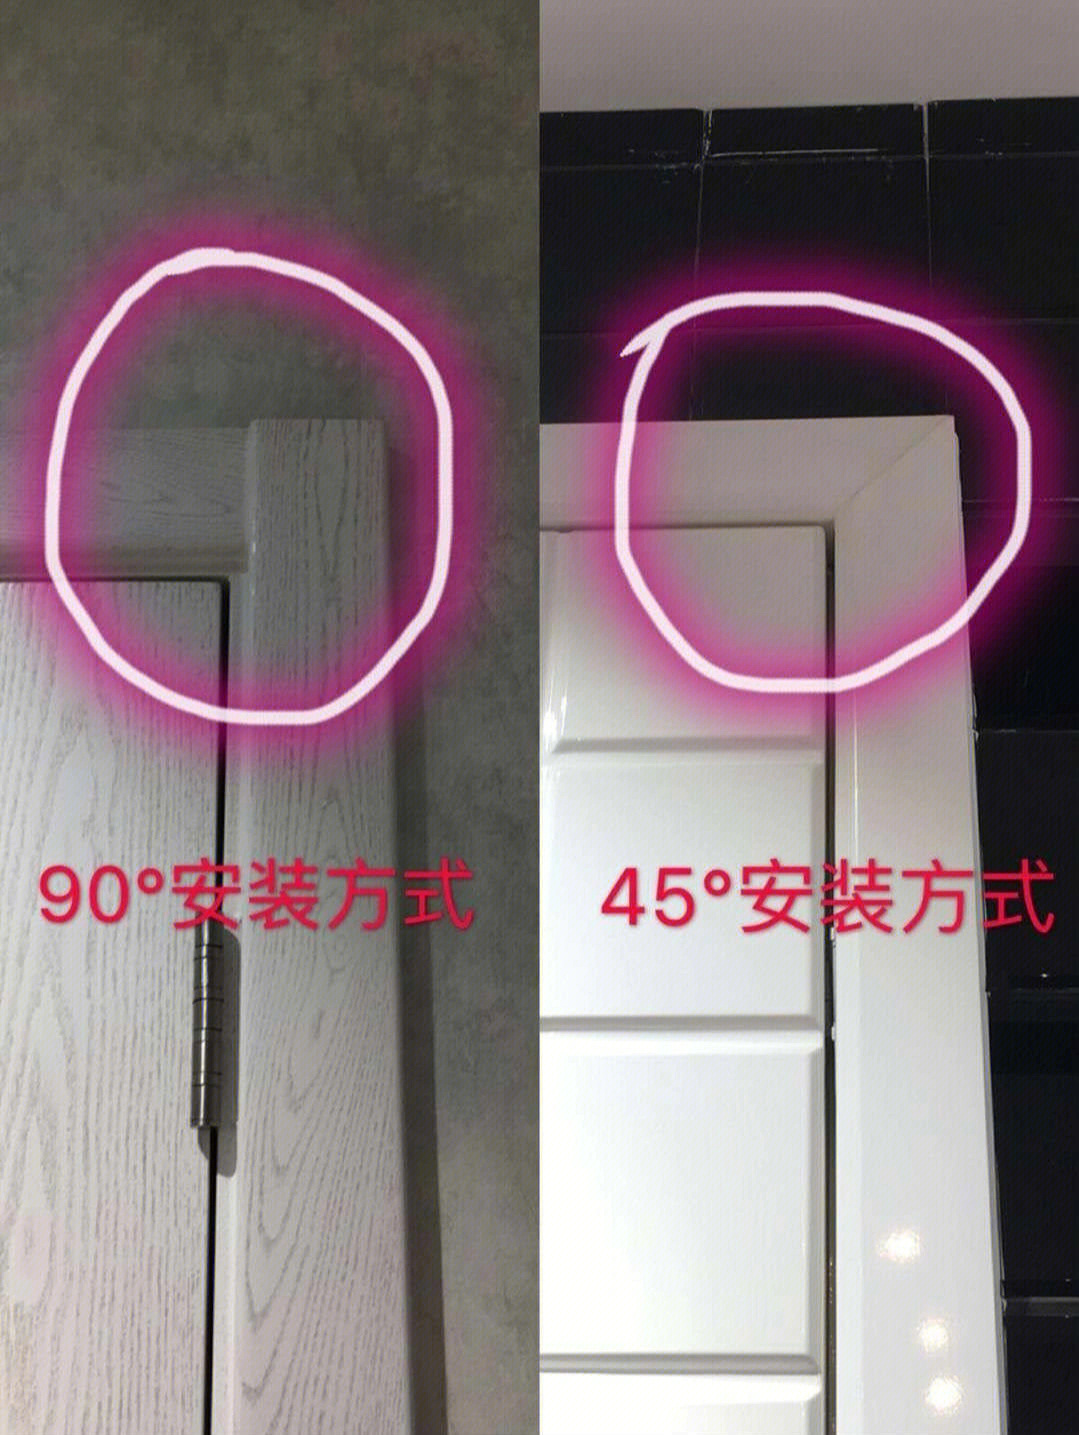 门套安装方式选择90度还是45度好呢?